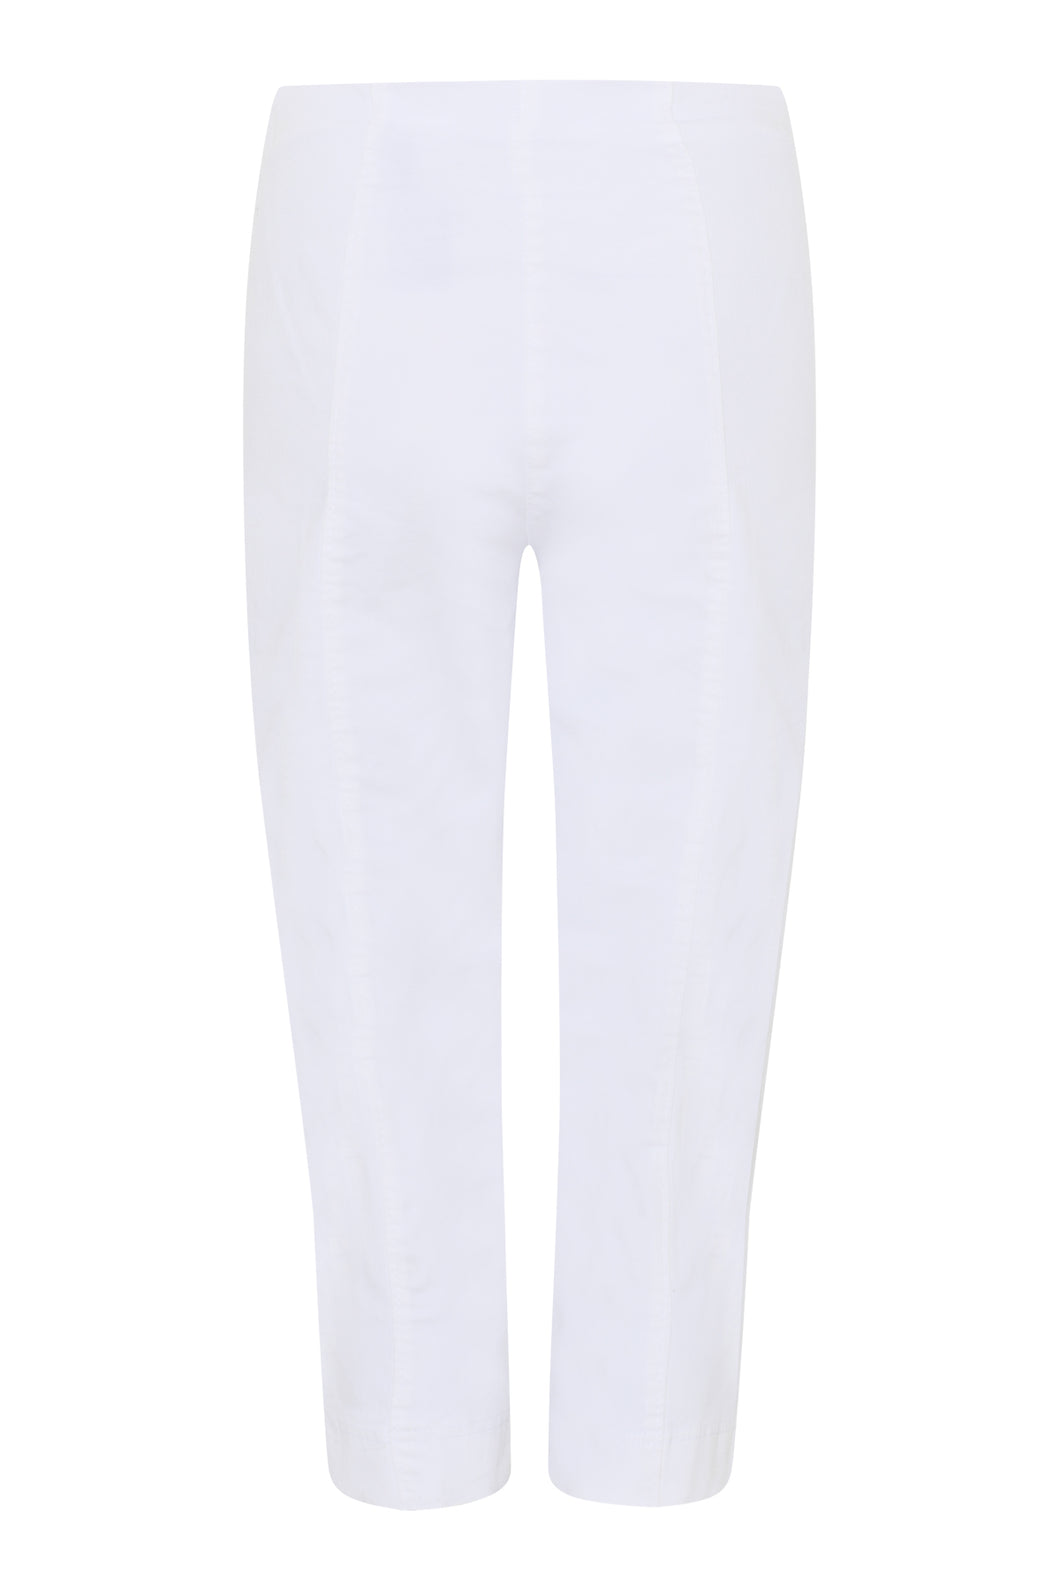 51664- White Denim Crop Trouser - Robell